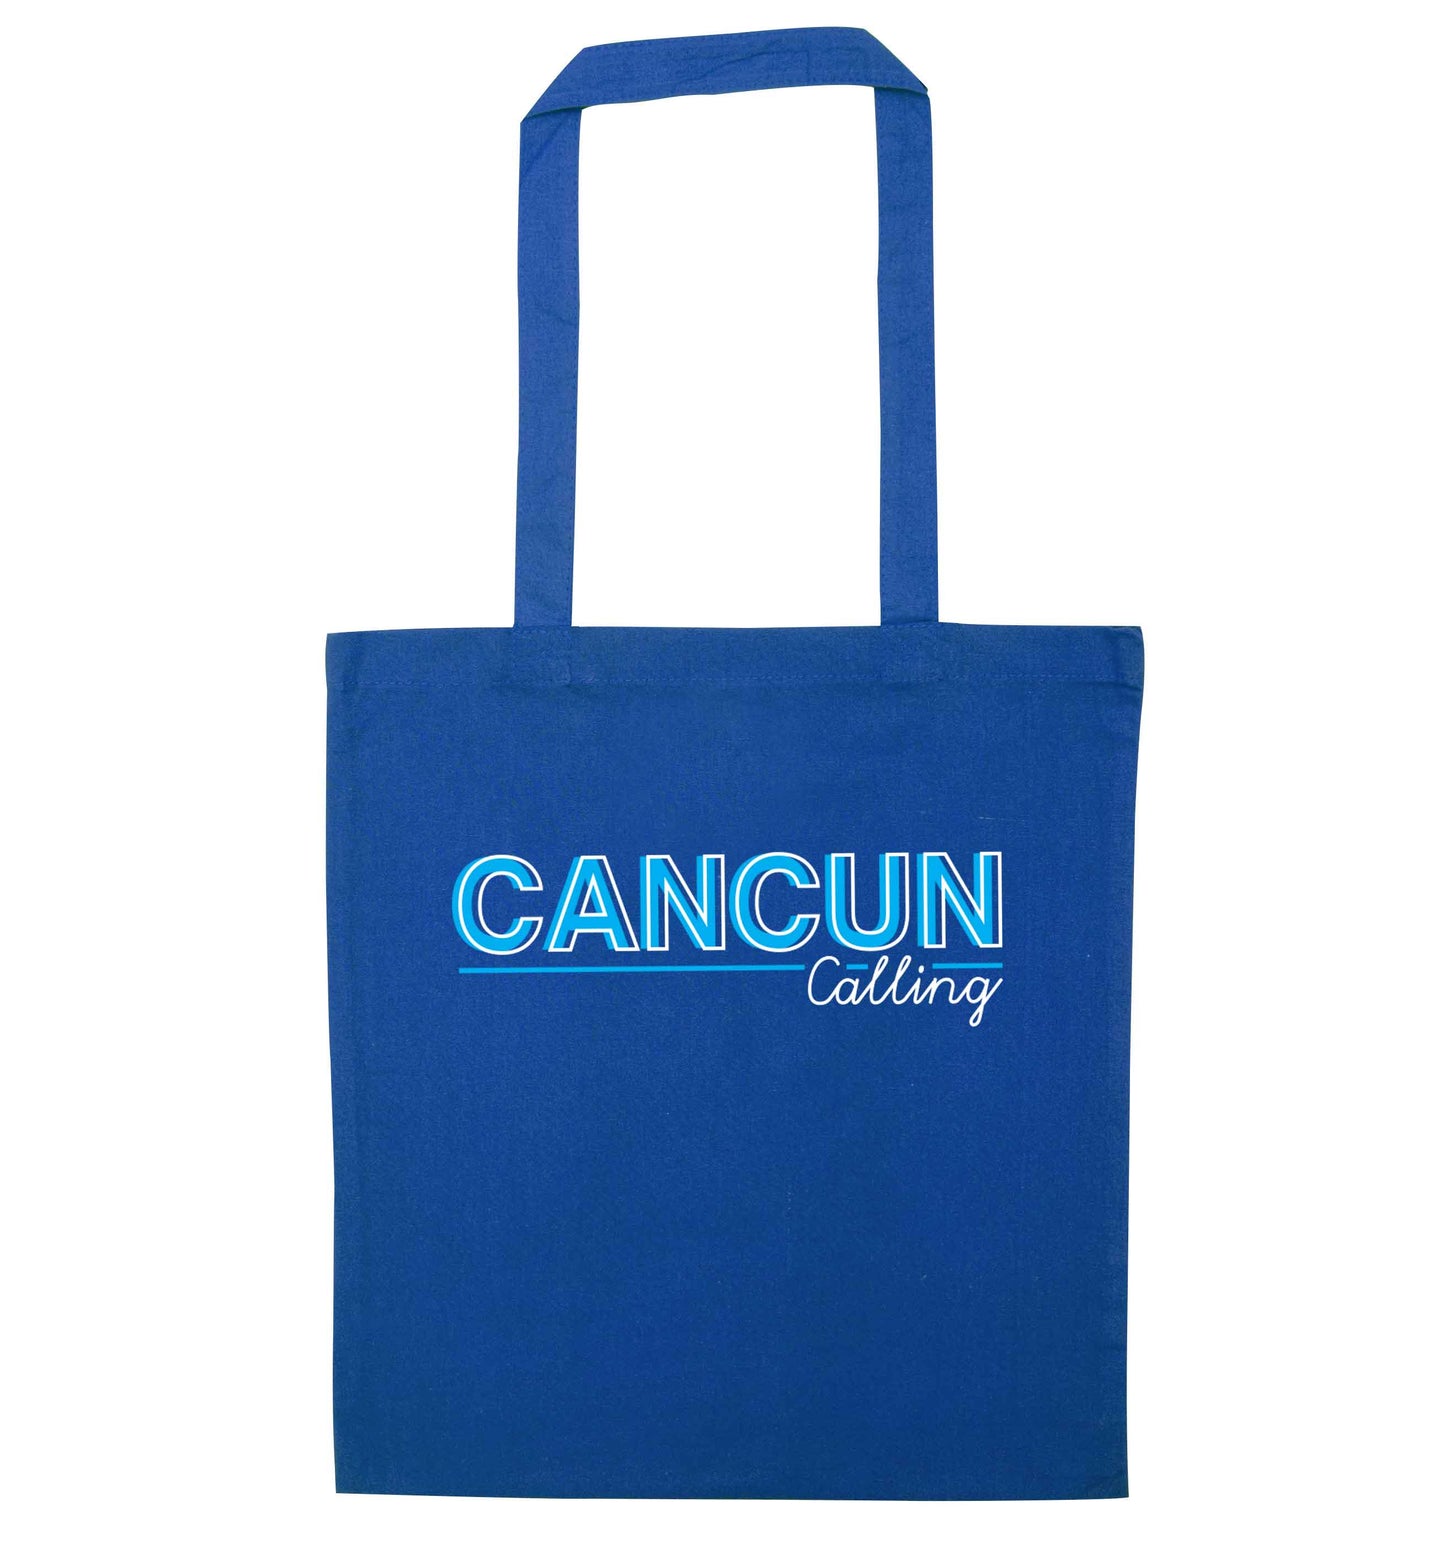 Cancun calling blue tote bag